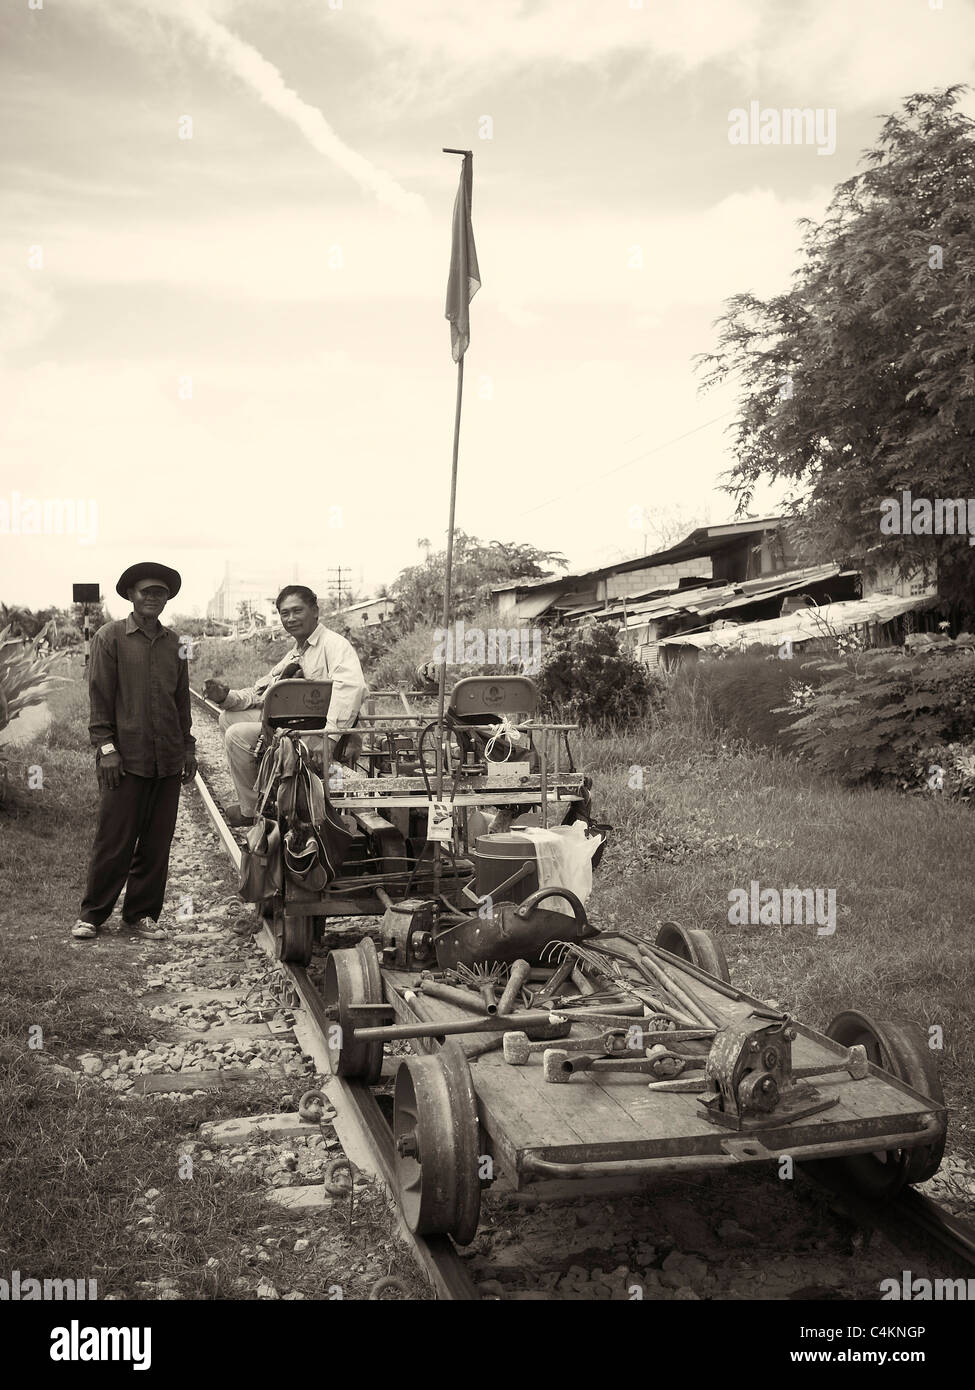 Fotografia d'epoca dei lavoratori delle ferrovie del passato. Thailandia S. E. Asia Fotografia in bianco e nero Foto Stock